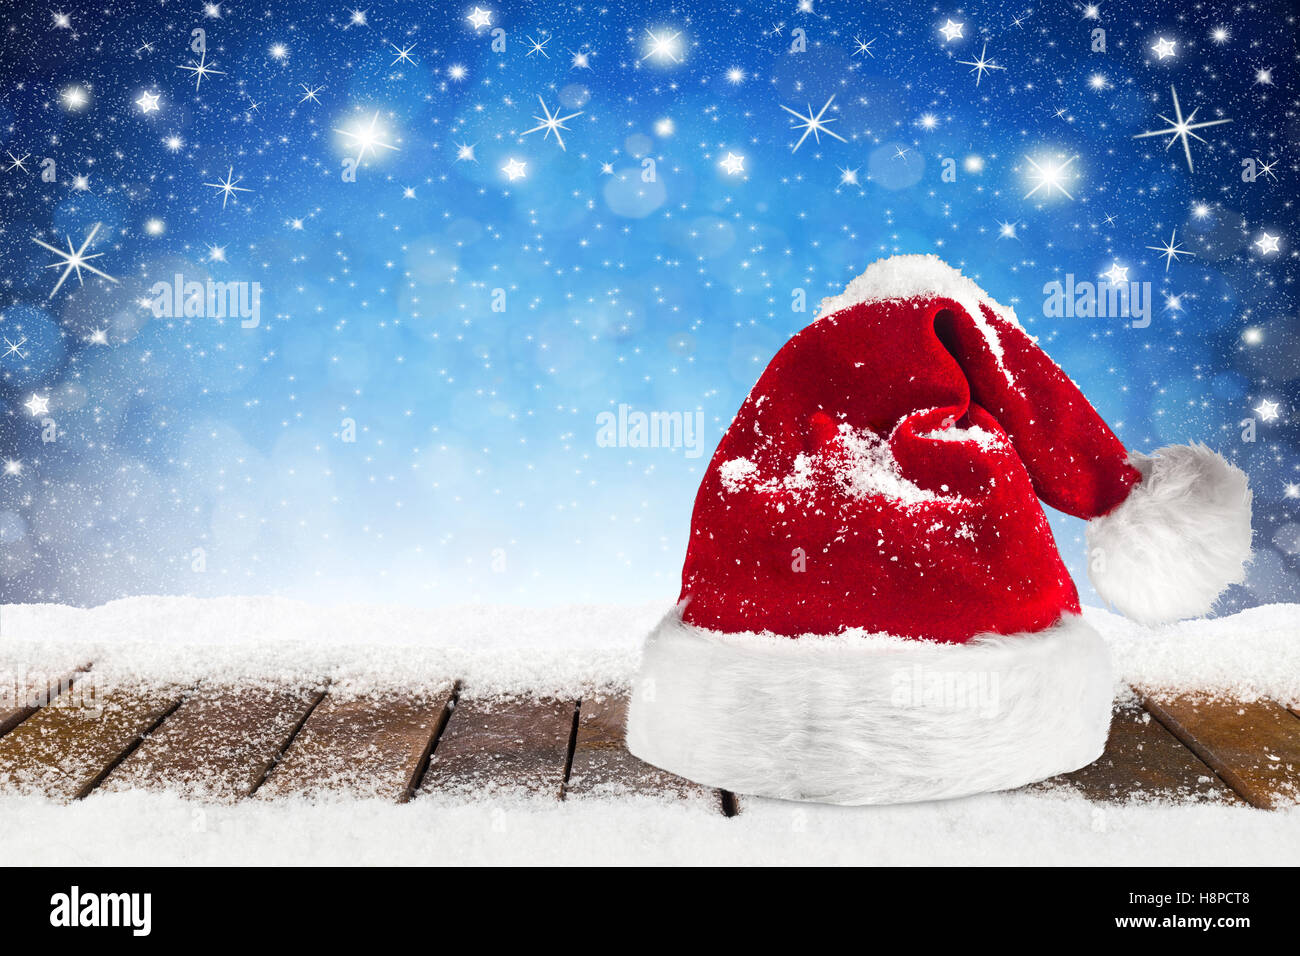 Weihnachten Xmas Hintergrund mit Weihnachtsmann Mütze Kappe auf verschneiten Holzbohlen vor blaue Nacht Himmel, Sterne und Schneeflocken Stockfoto